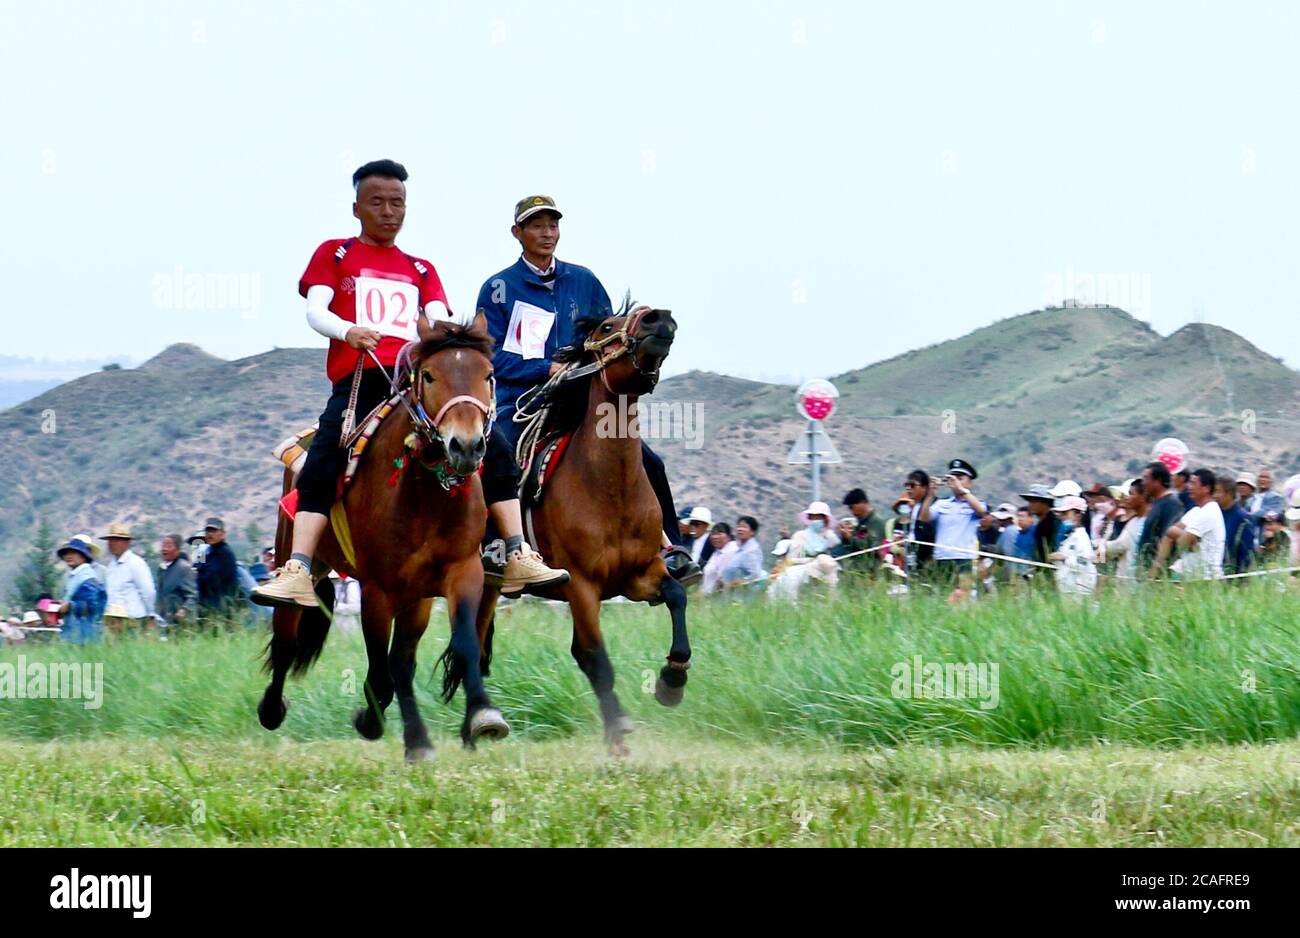 Zhangye, Zhangye, Cina. 7 agosto 2020. GansuÃ¯Â¼Å CINA-herders e cavalieri galoppo sulla prateria in Horseshoe Tibetan Township nella contea autonoma di Sunan Yugur di Zhangye City, nella provincia di Gansu della Cina nord-occidentale, 4 agosto 2020. Più di 3,000 turisti da Qinghai, Xinjiang e contee e città vicine sono attratti per vedere il project.on quel giorno, Più di 60 Riders dei gruppi etnici tibetani e Yugu hanno tenuto una corsa tradizionale sulle corse dei cavalli al Festival delle corse dei cavalli della città tibetana di Horseshoe nella contea autonoma di Sunan Yugu, nella città di Zhangye, nella provincia di Gansu. Si trova presso il Foto Stock